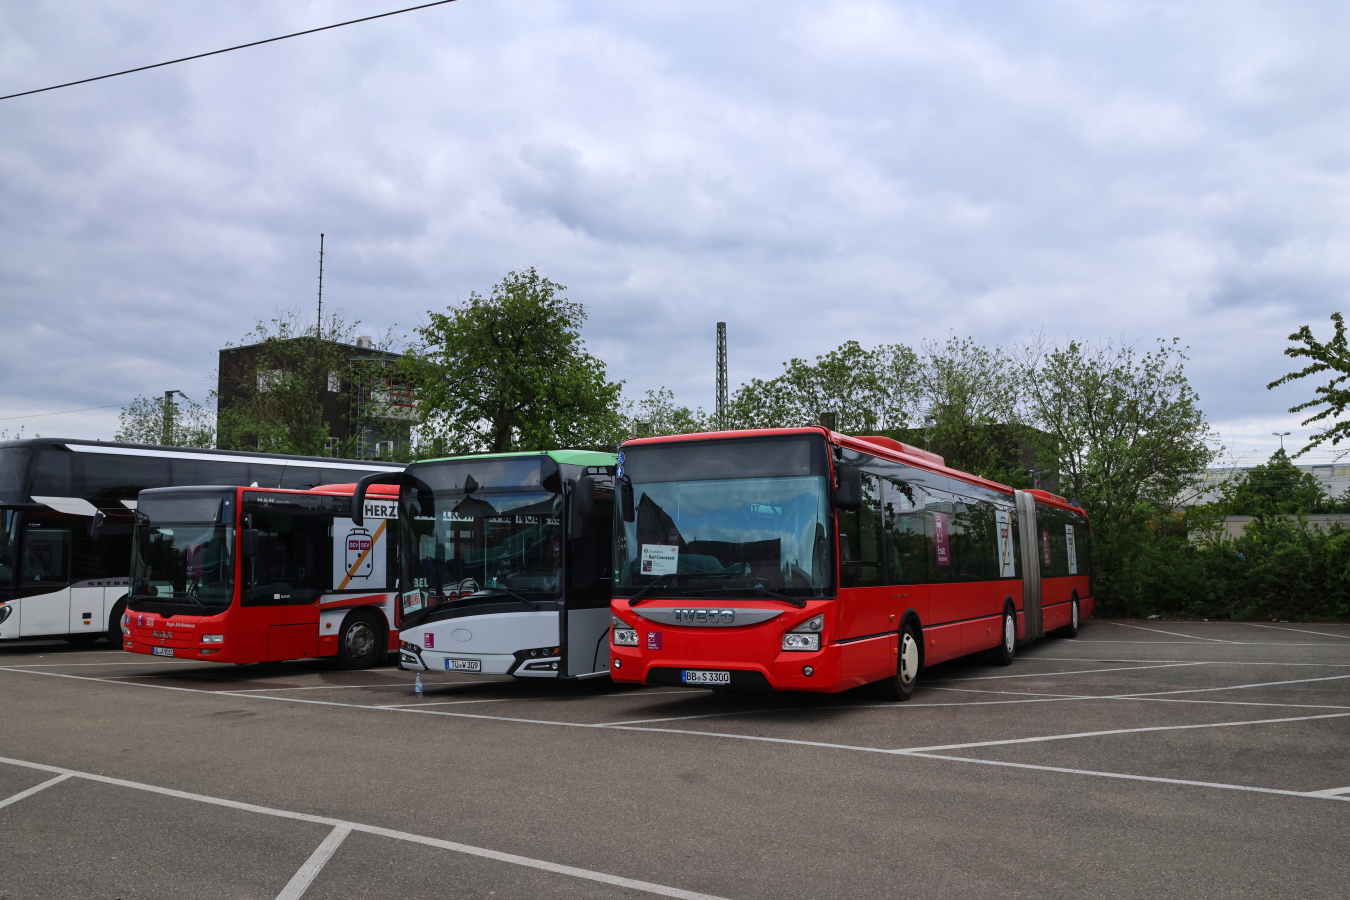 Böblingen, IVECO Urbanway 18M № BB-S 3300; Stuttgart — EV Digitaler Knoten Stuttgart — 2023